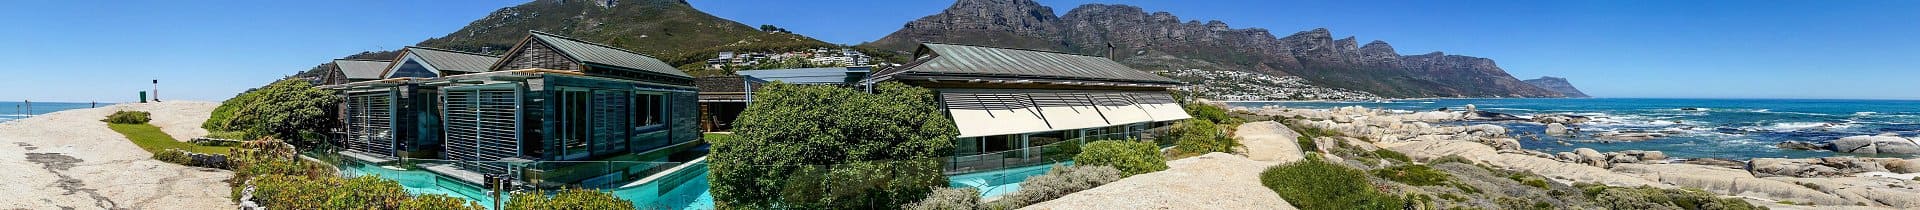 Unterkünfte, Gästehäuser und Ferienhäuser in Kapstadt, Südafrika